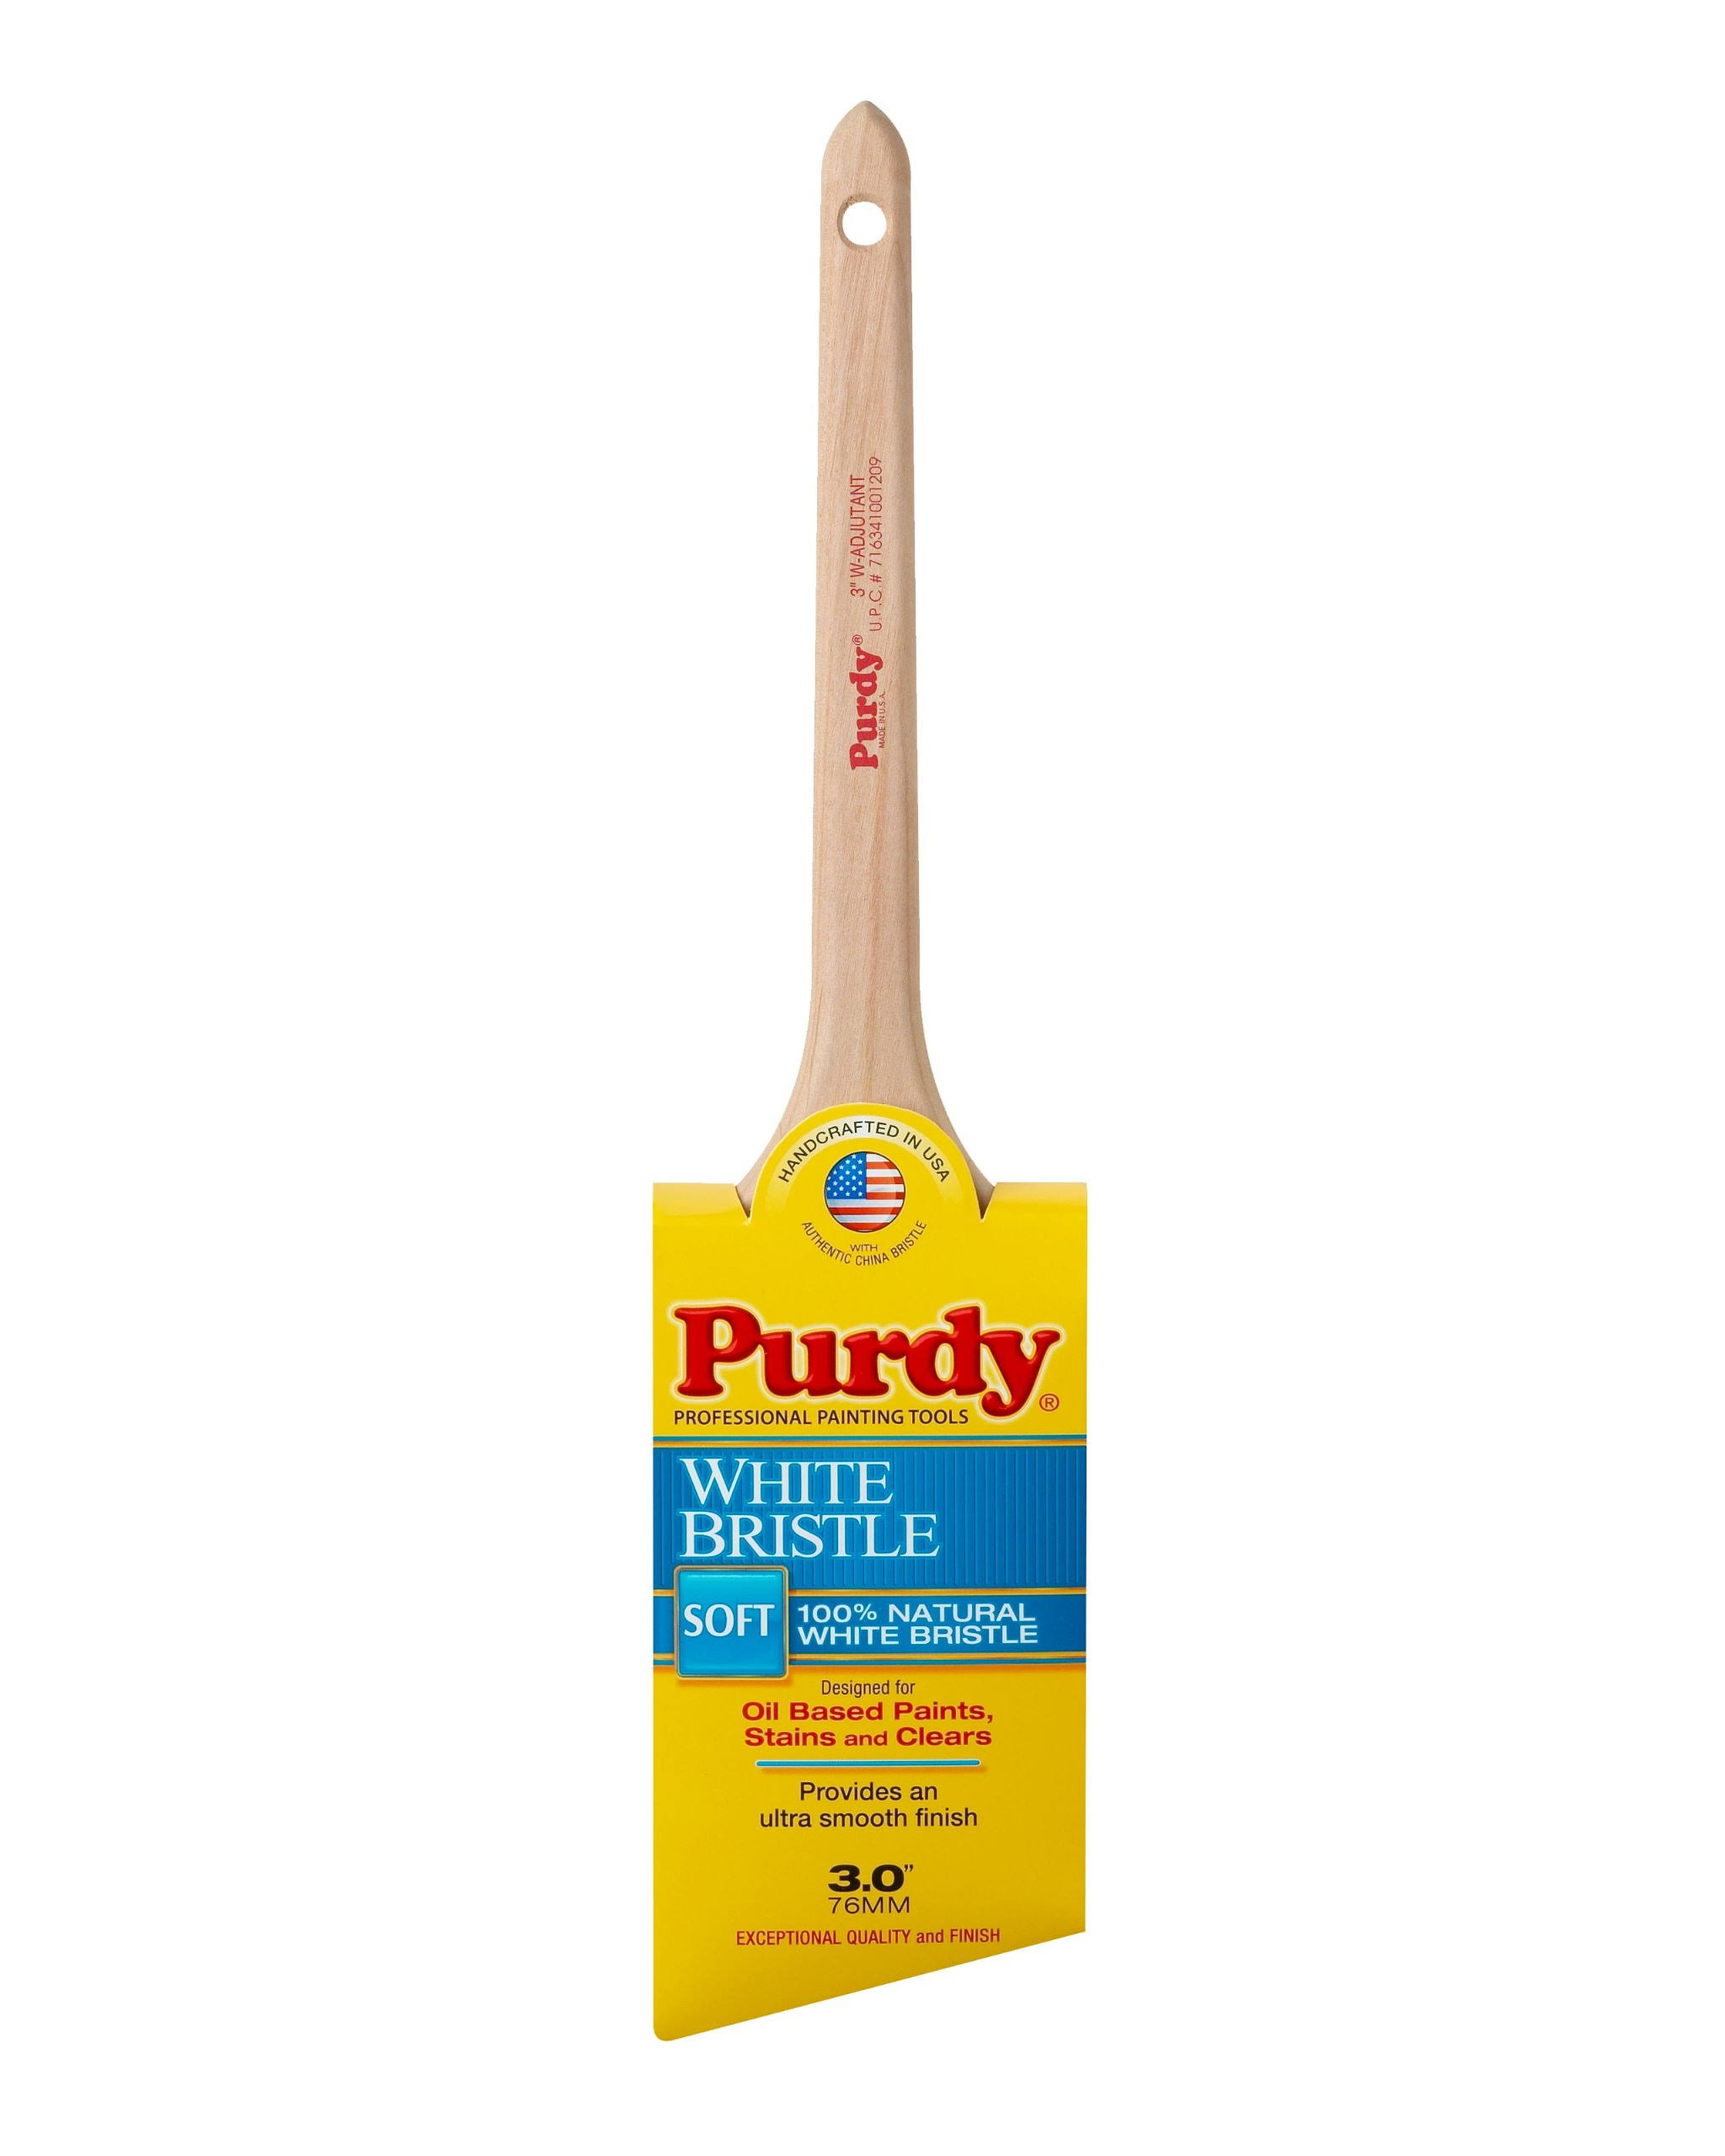 Purdy Angular Trim Paint Brush - 3", White Bristle